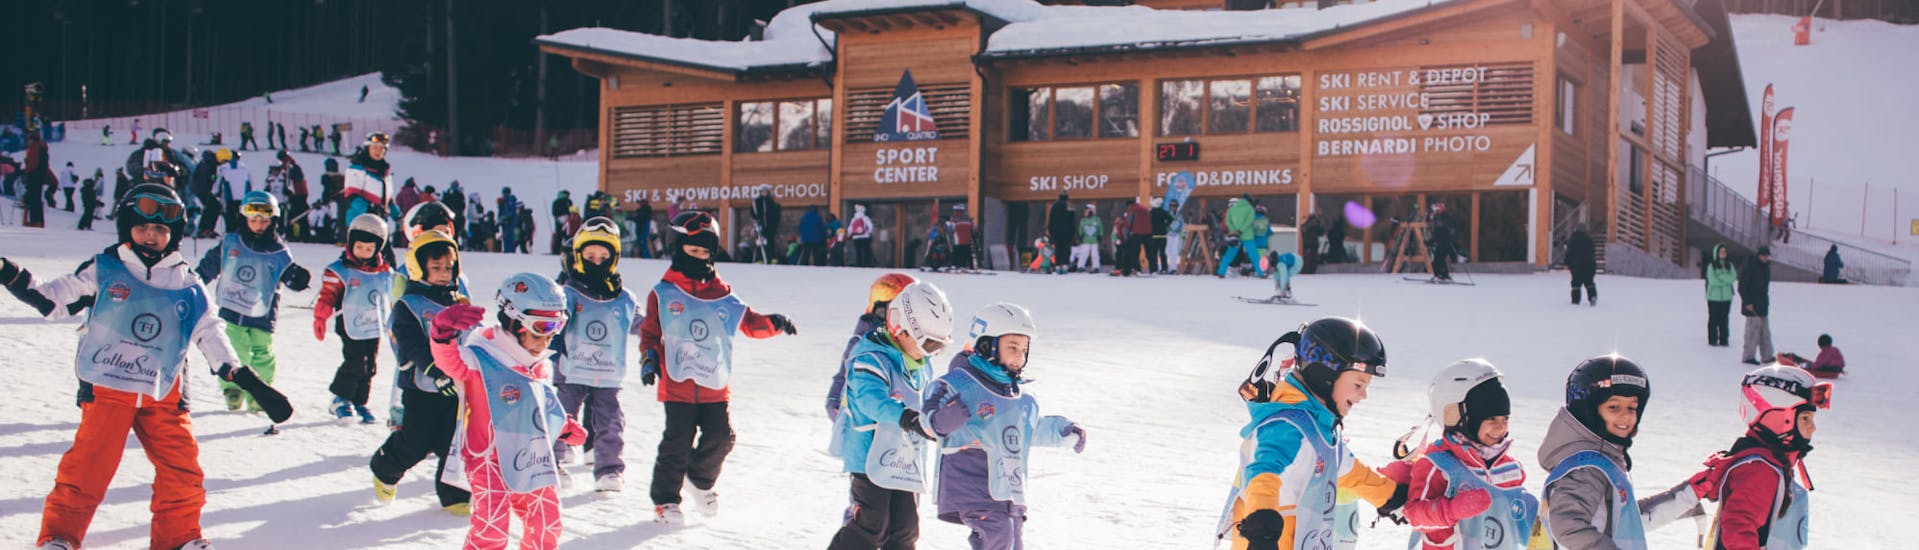 Cours de ski Enfants dès 3 ans pour Débutants.